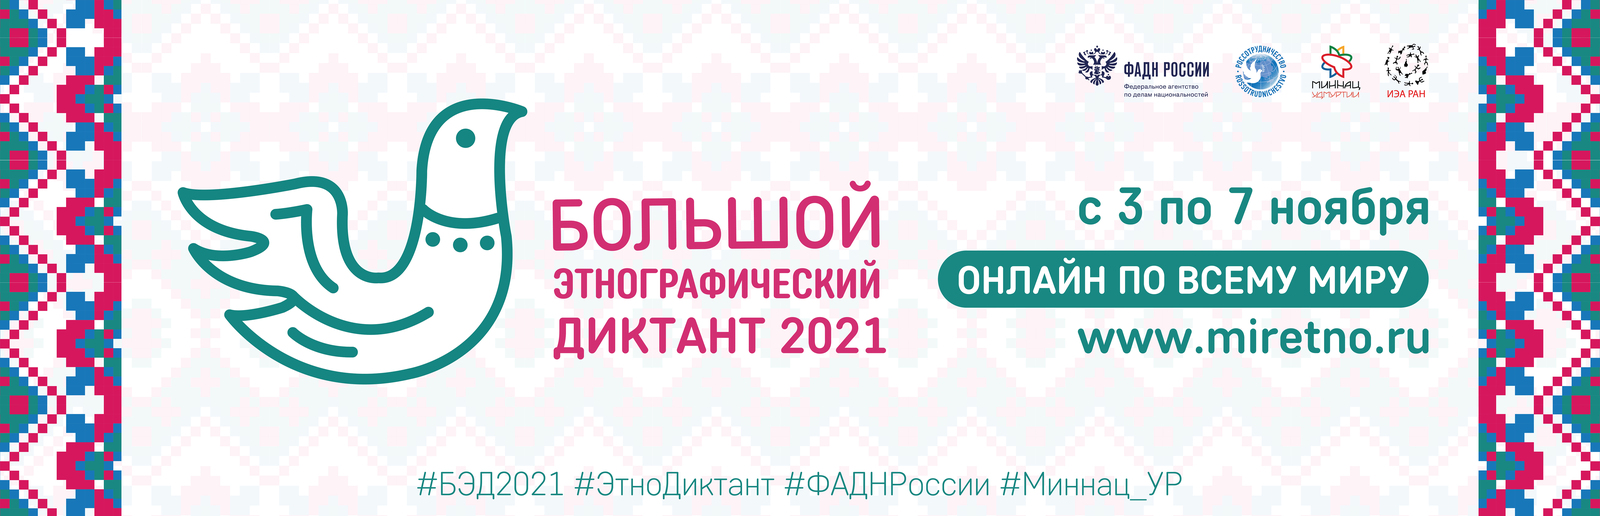 Международная просветительская акция «Большой этнографический диктант-2021»